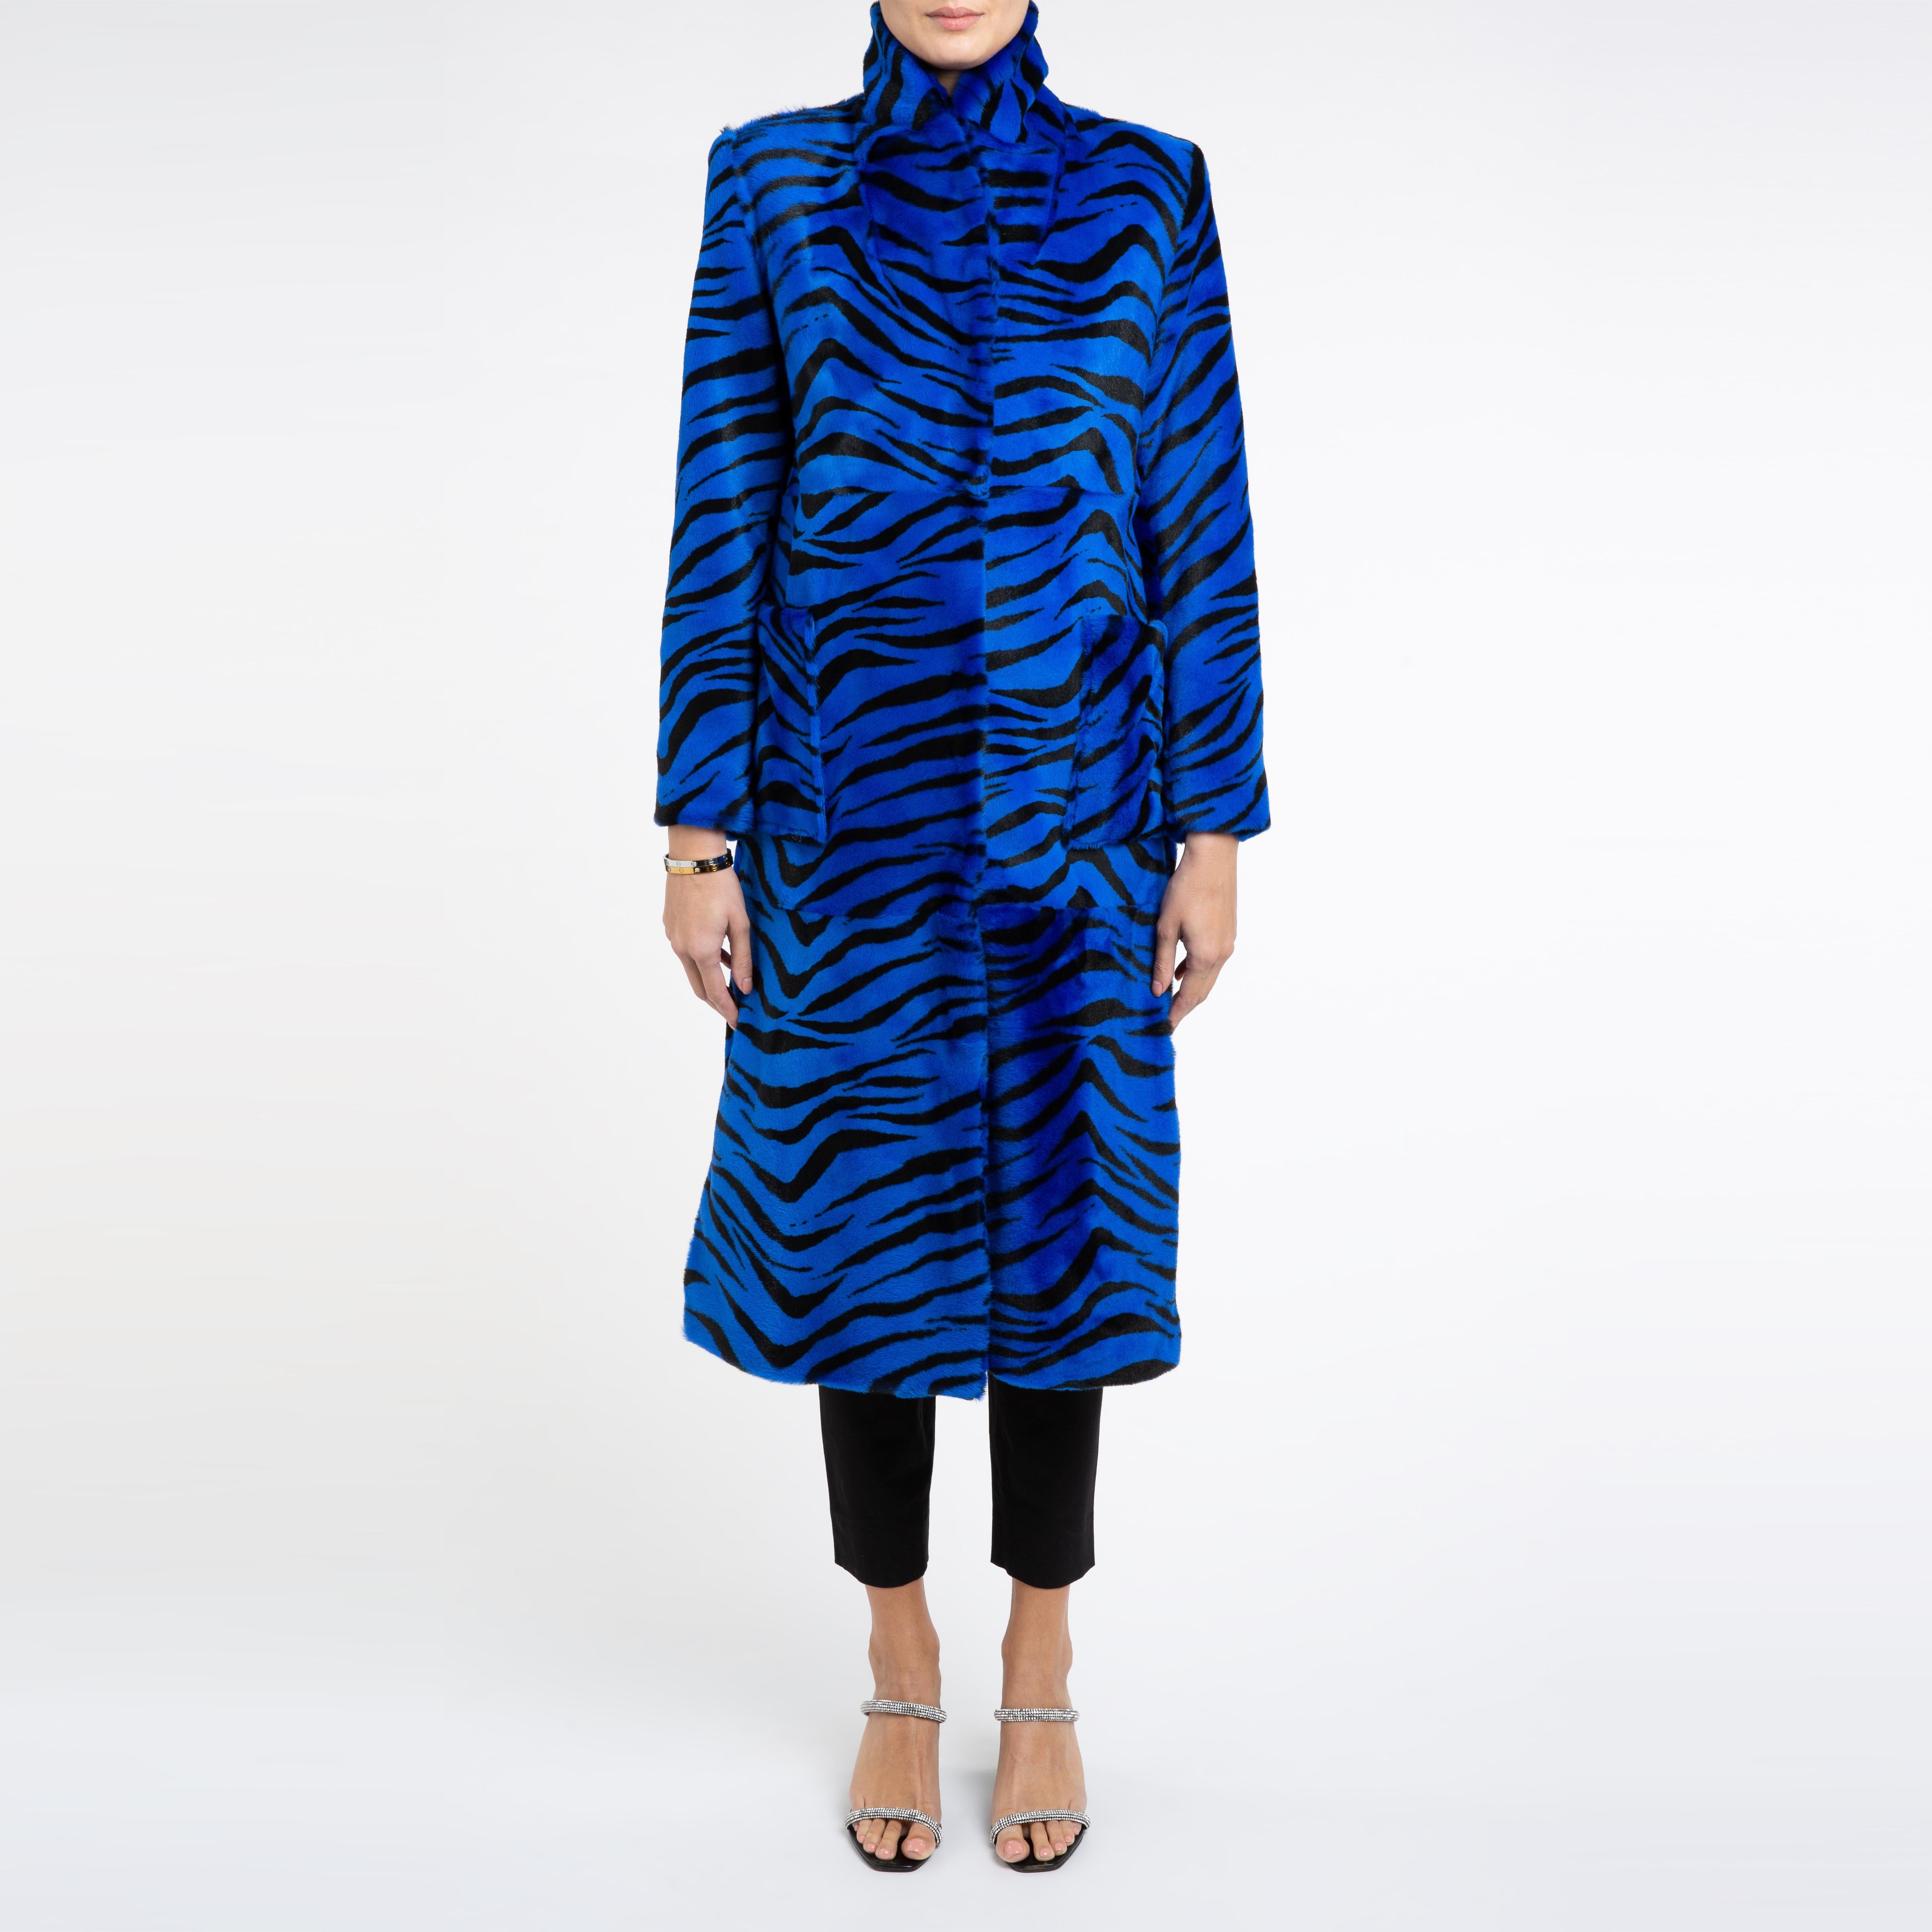 Verheyen London Shearling Mantel in Blau Zebra Print Größe uk 8-10

Ein Mantel, den Sie sowohl zu Jeans als auch zu einem Kleid tragen können und der Sie in der kalten Jahreszeit warm hält. 
Dieses Longline-Design ist schmeichelhaft und lässt sich